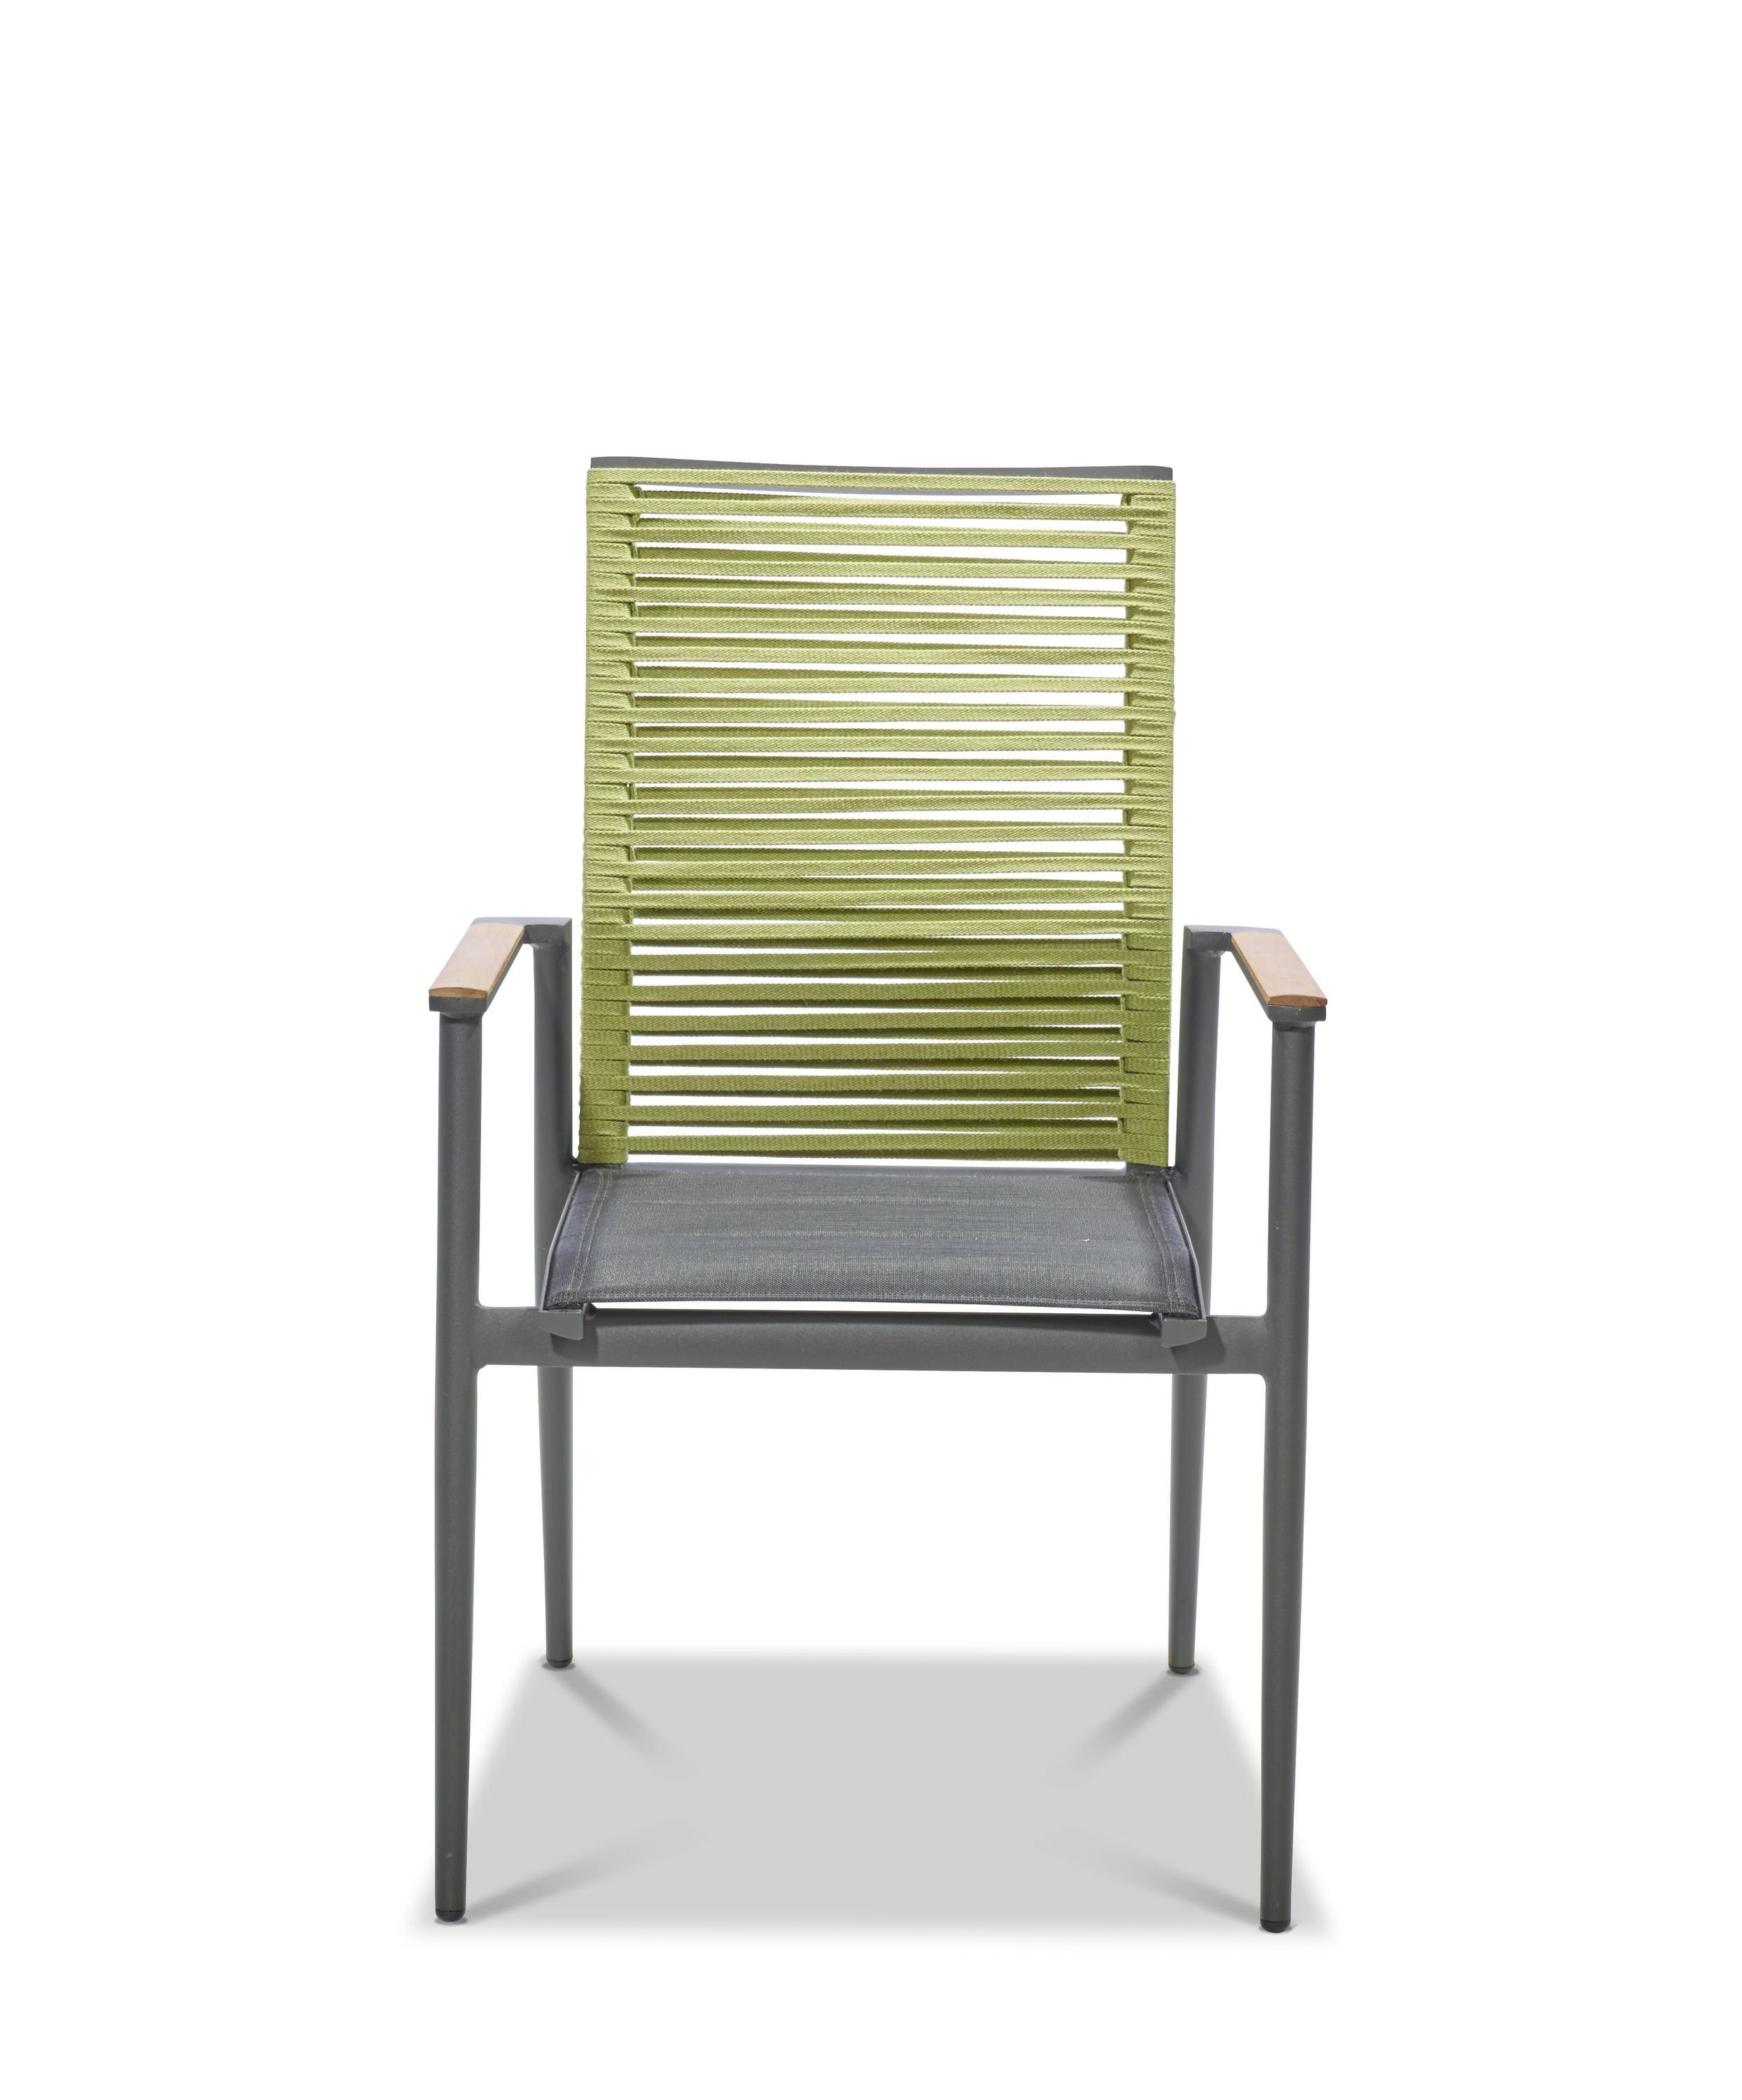 Musterring Gartenstuhl Freilicht (1 St), Stuhl mit Armlehne, Sitzhöhe 45 cm